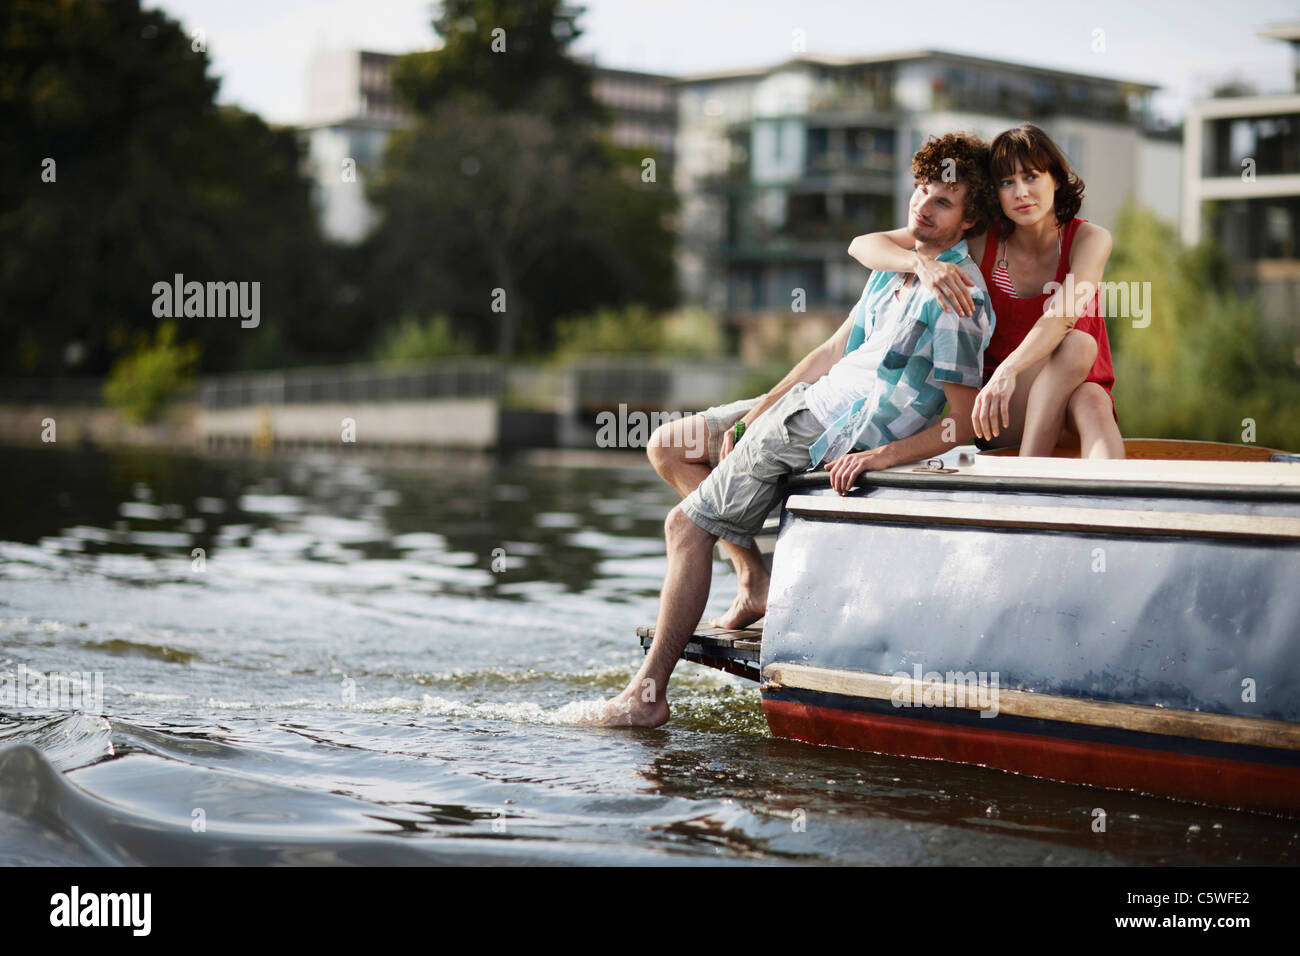 Germania, Berlino, coppia giovane seduto su imbarcazione a motore, ritratto Foto Stock